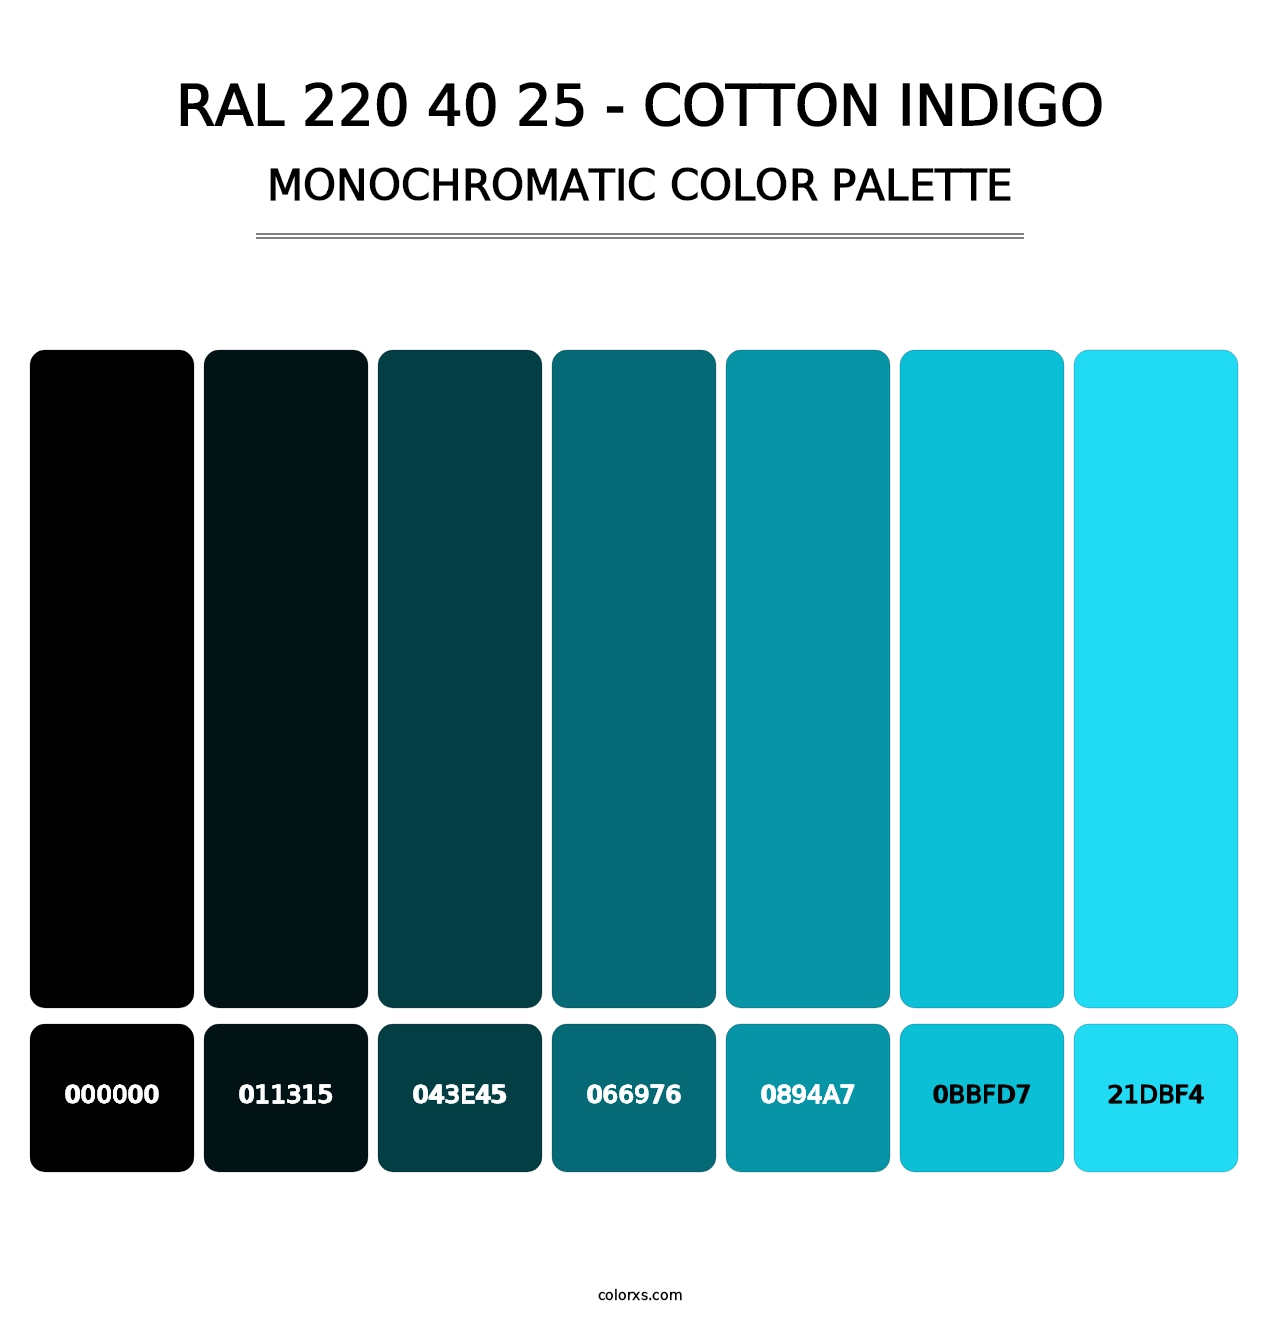 RAL 220 40 25 - Cotton Indigo - Monochromatic Color Palette